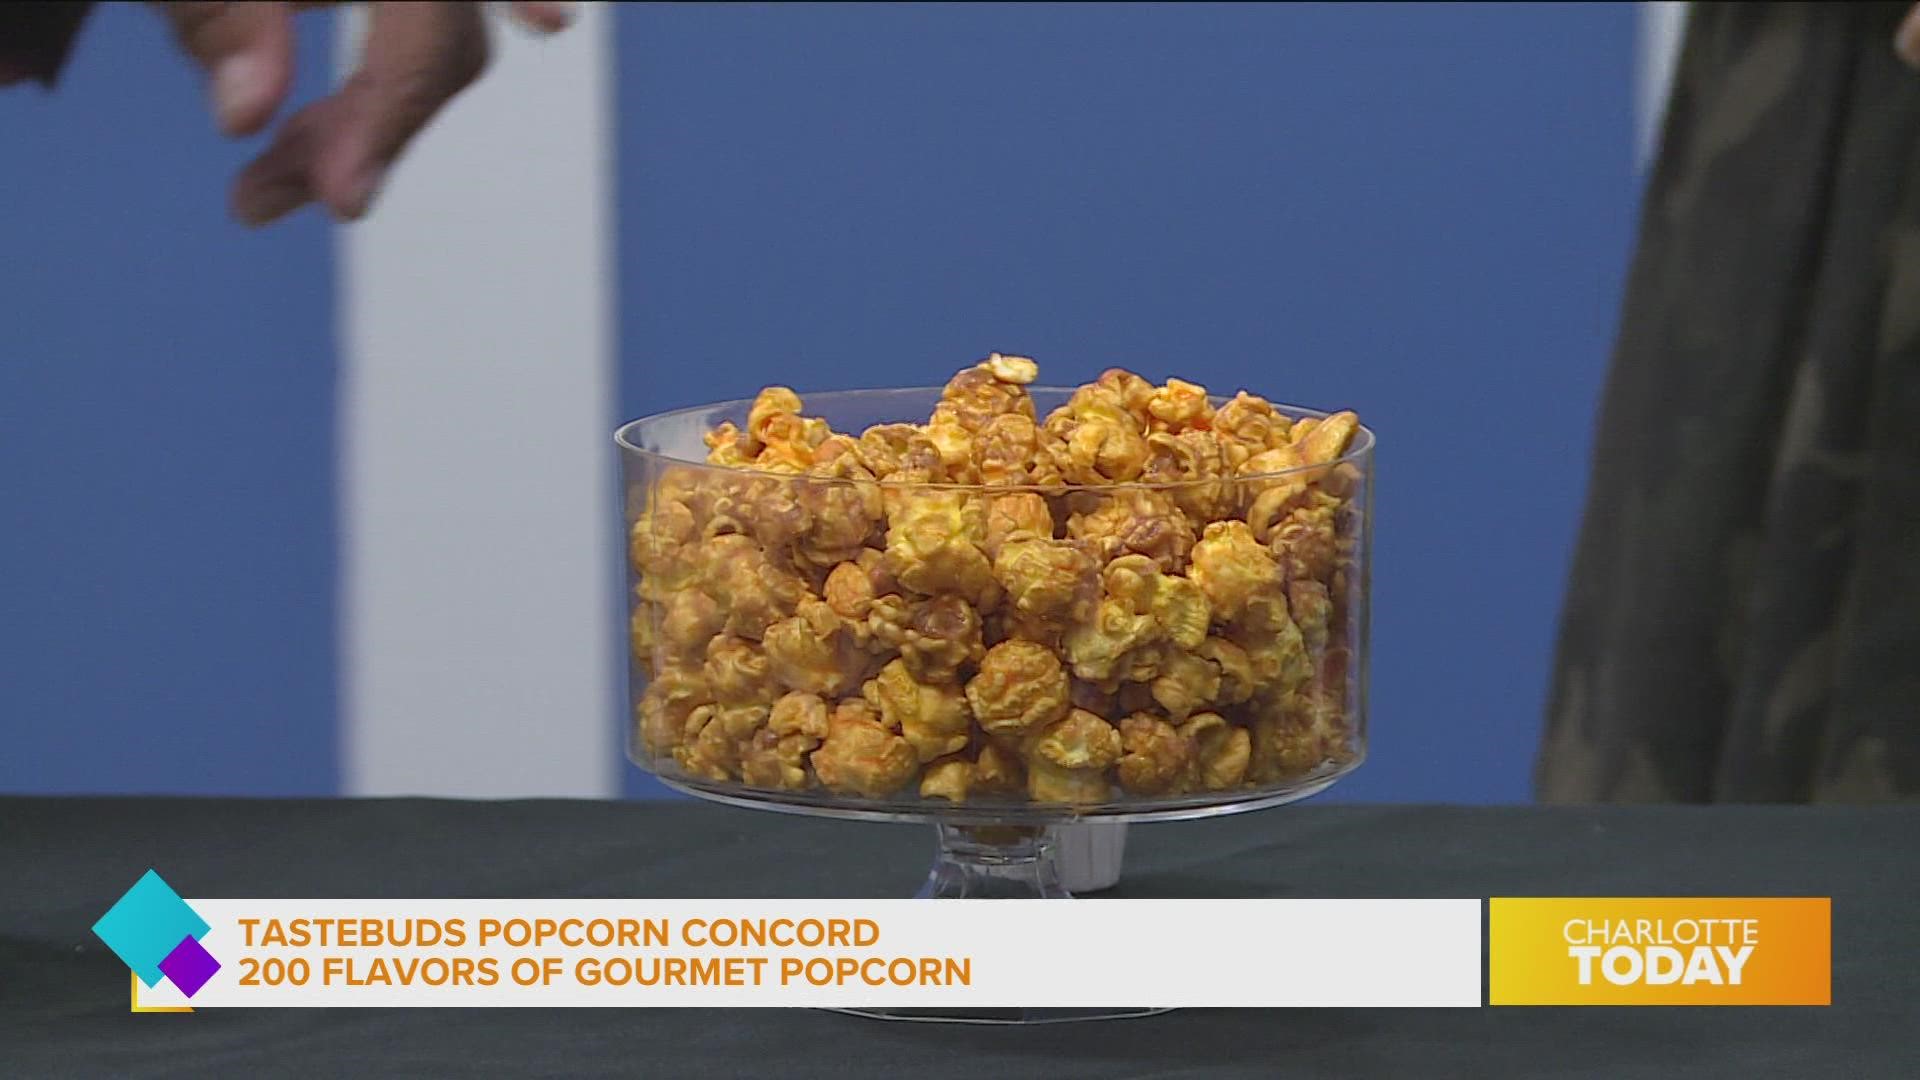 Celebrate with Tastebuds  Popcorn Concord!